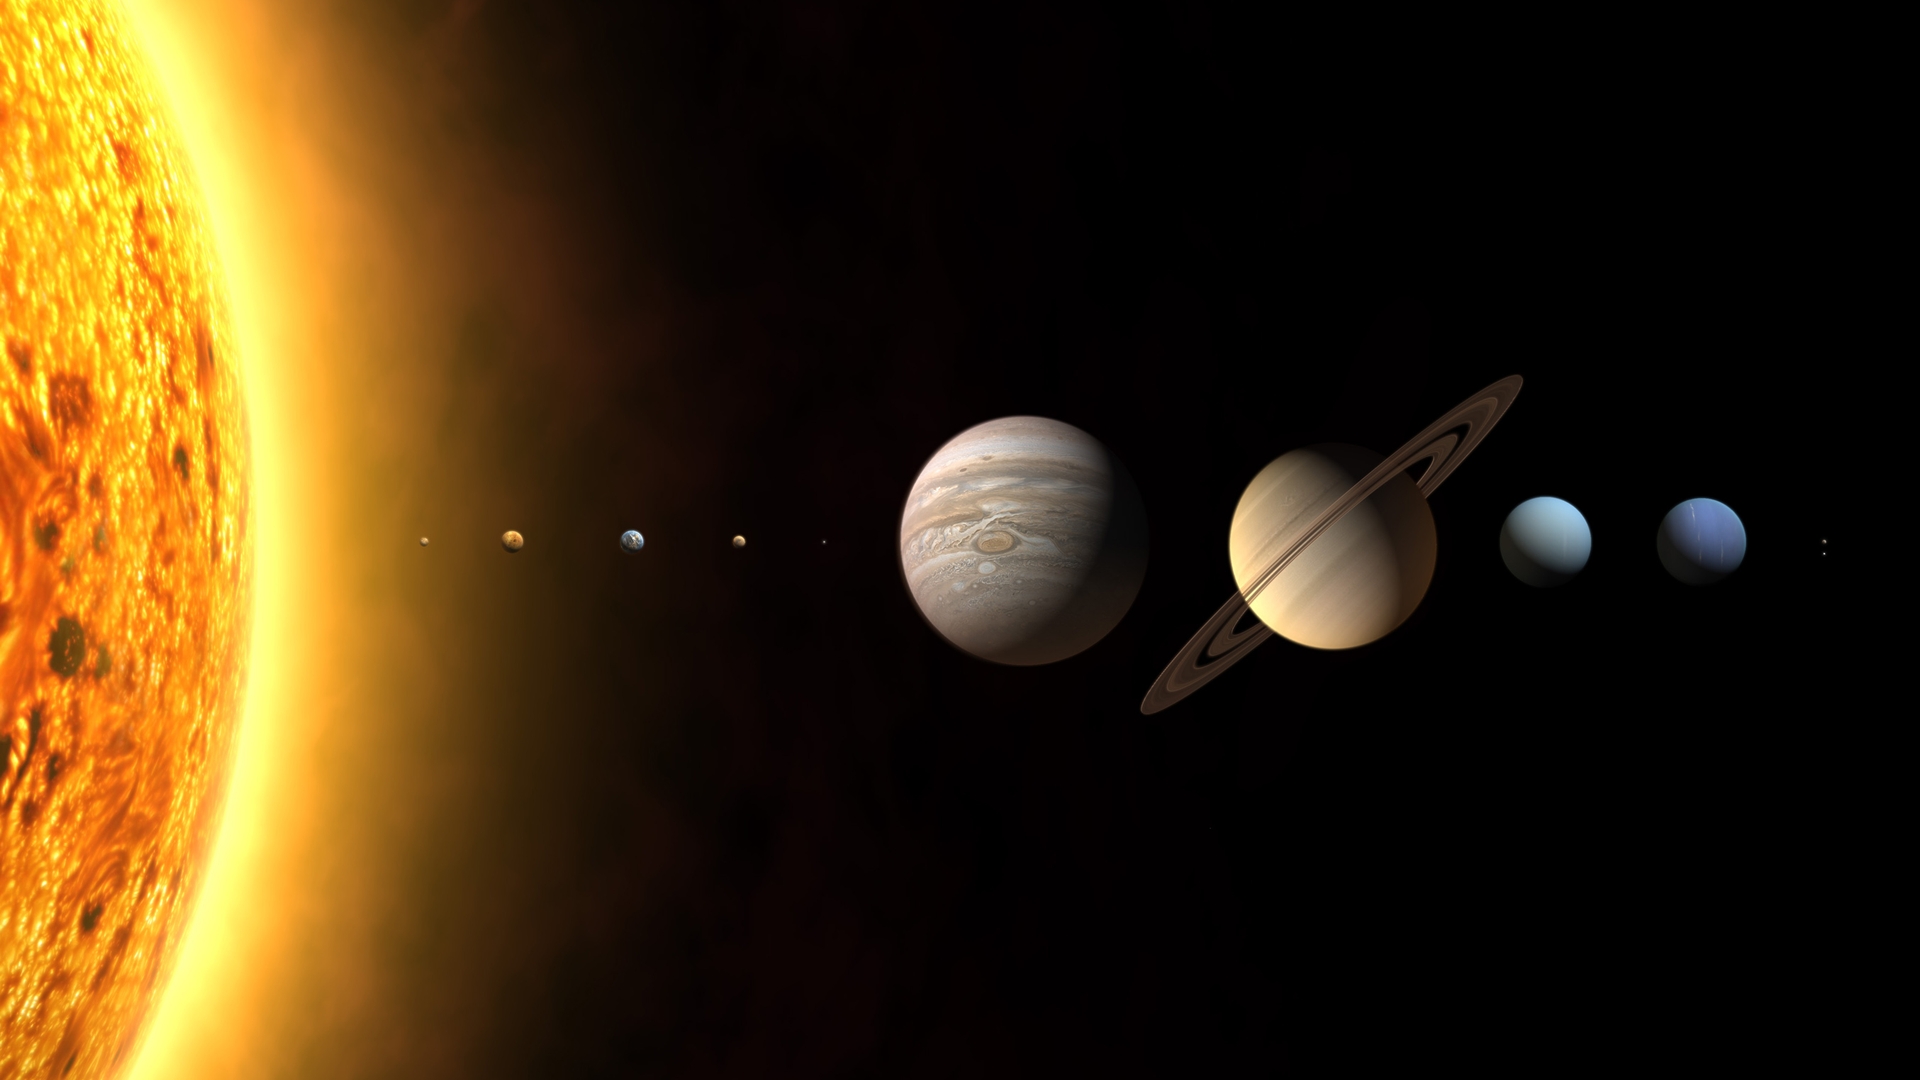 Güneş Sistemi dışında dev manyetik alan keşfedildi!